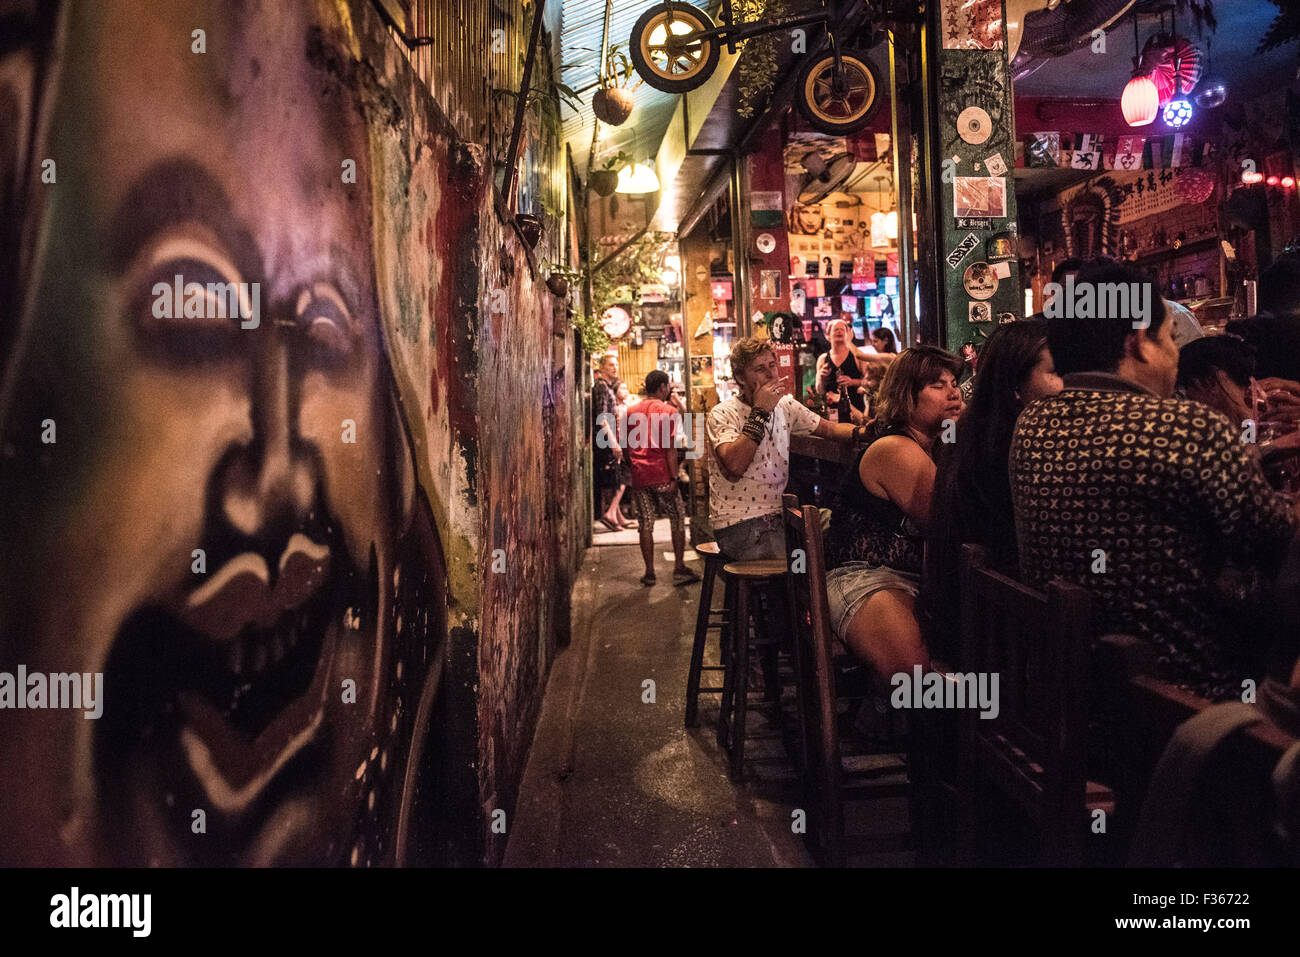 Un bar clandestino con graffiti en Bangkok, Tailandia. Foto de stock